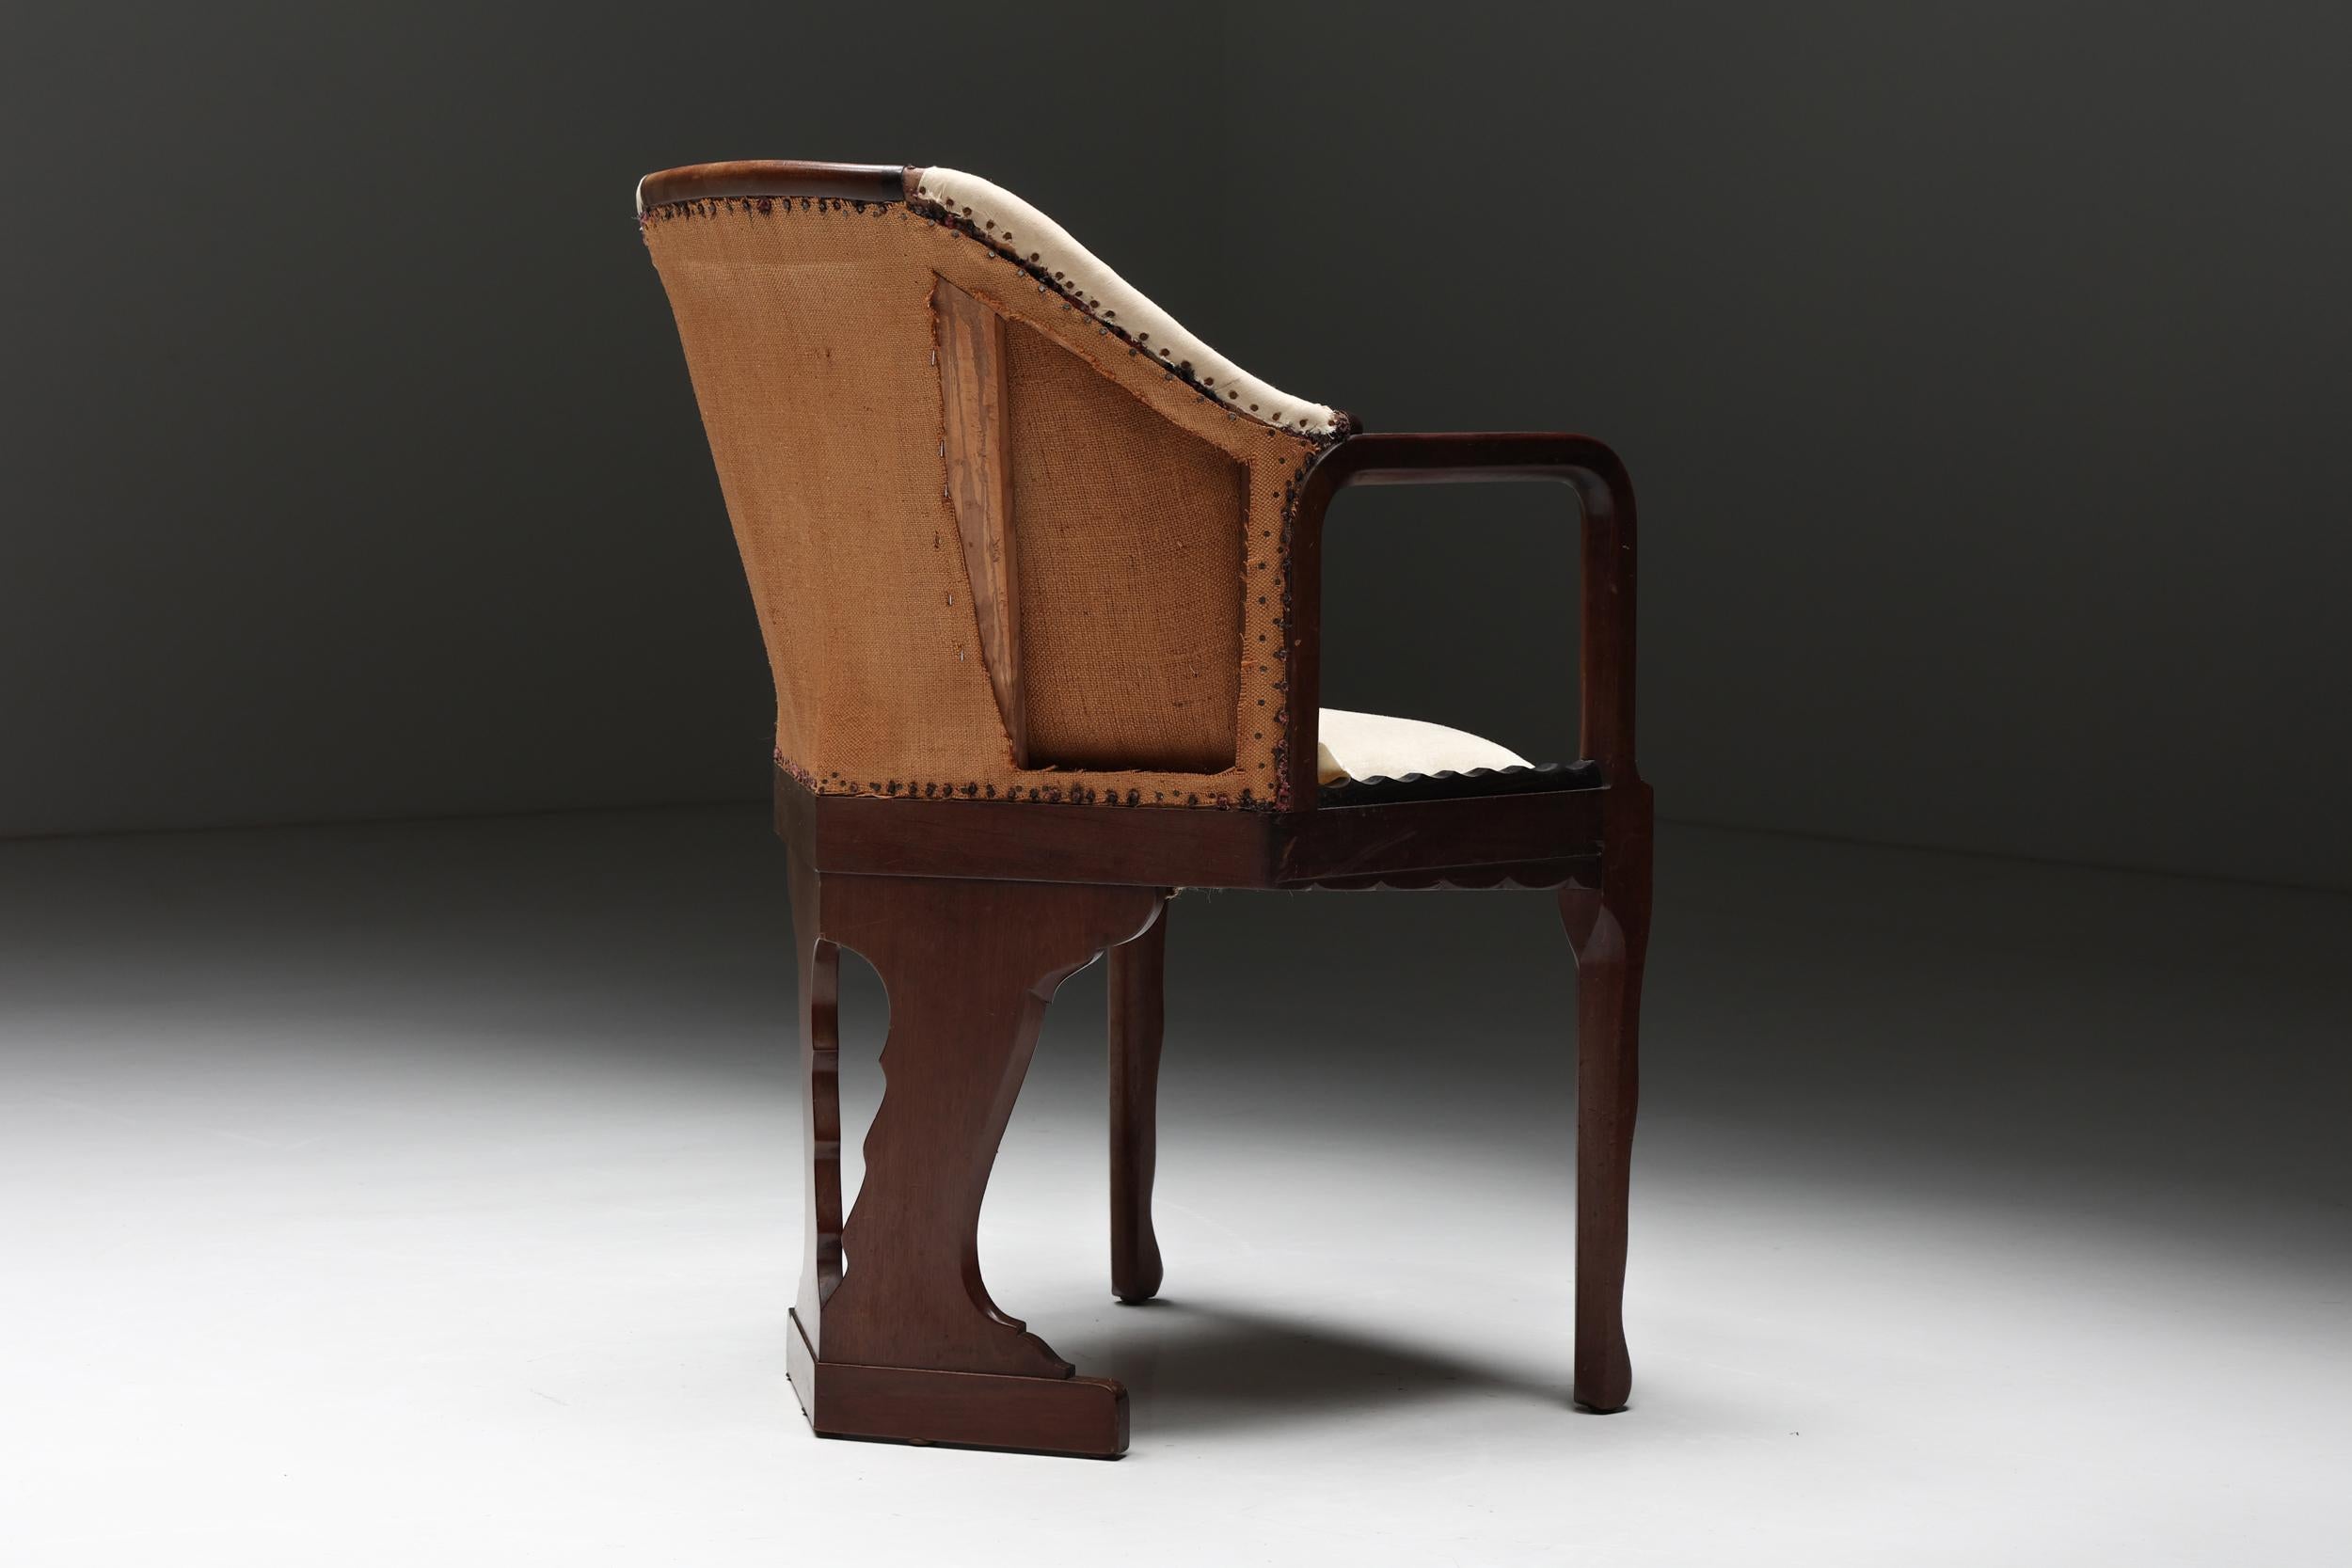 Fabric Amsterdamse School Side Chair, Art Deco, Dutch Design, 1930s